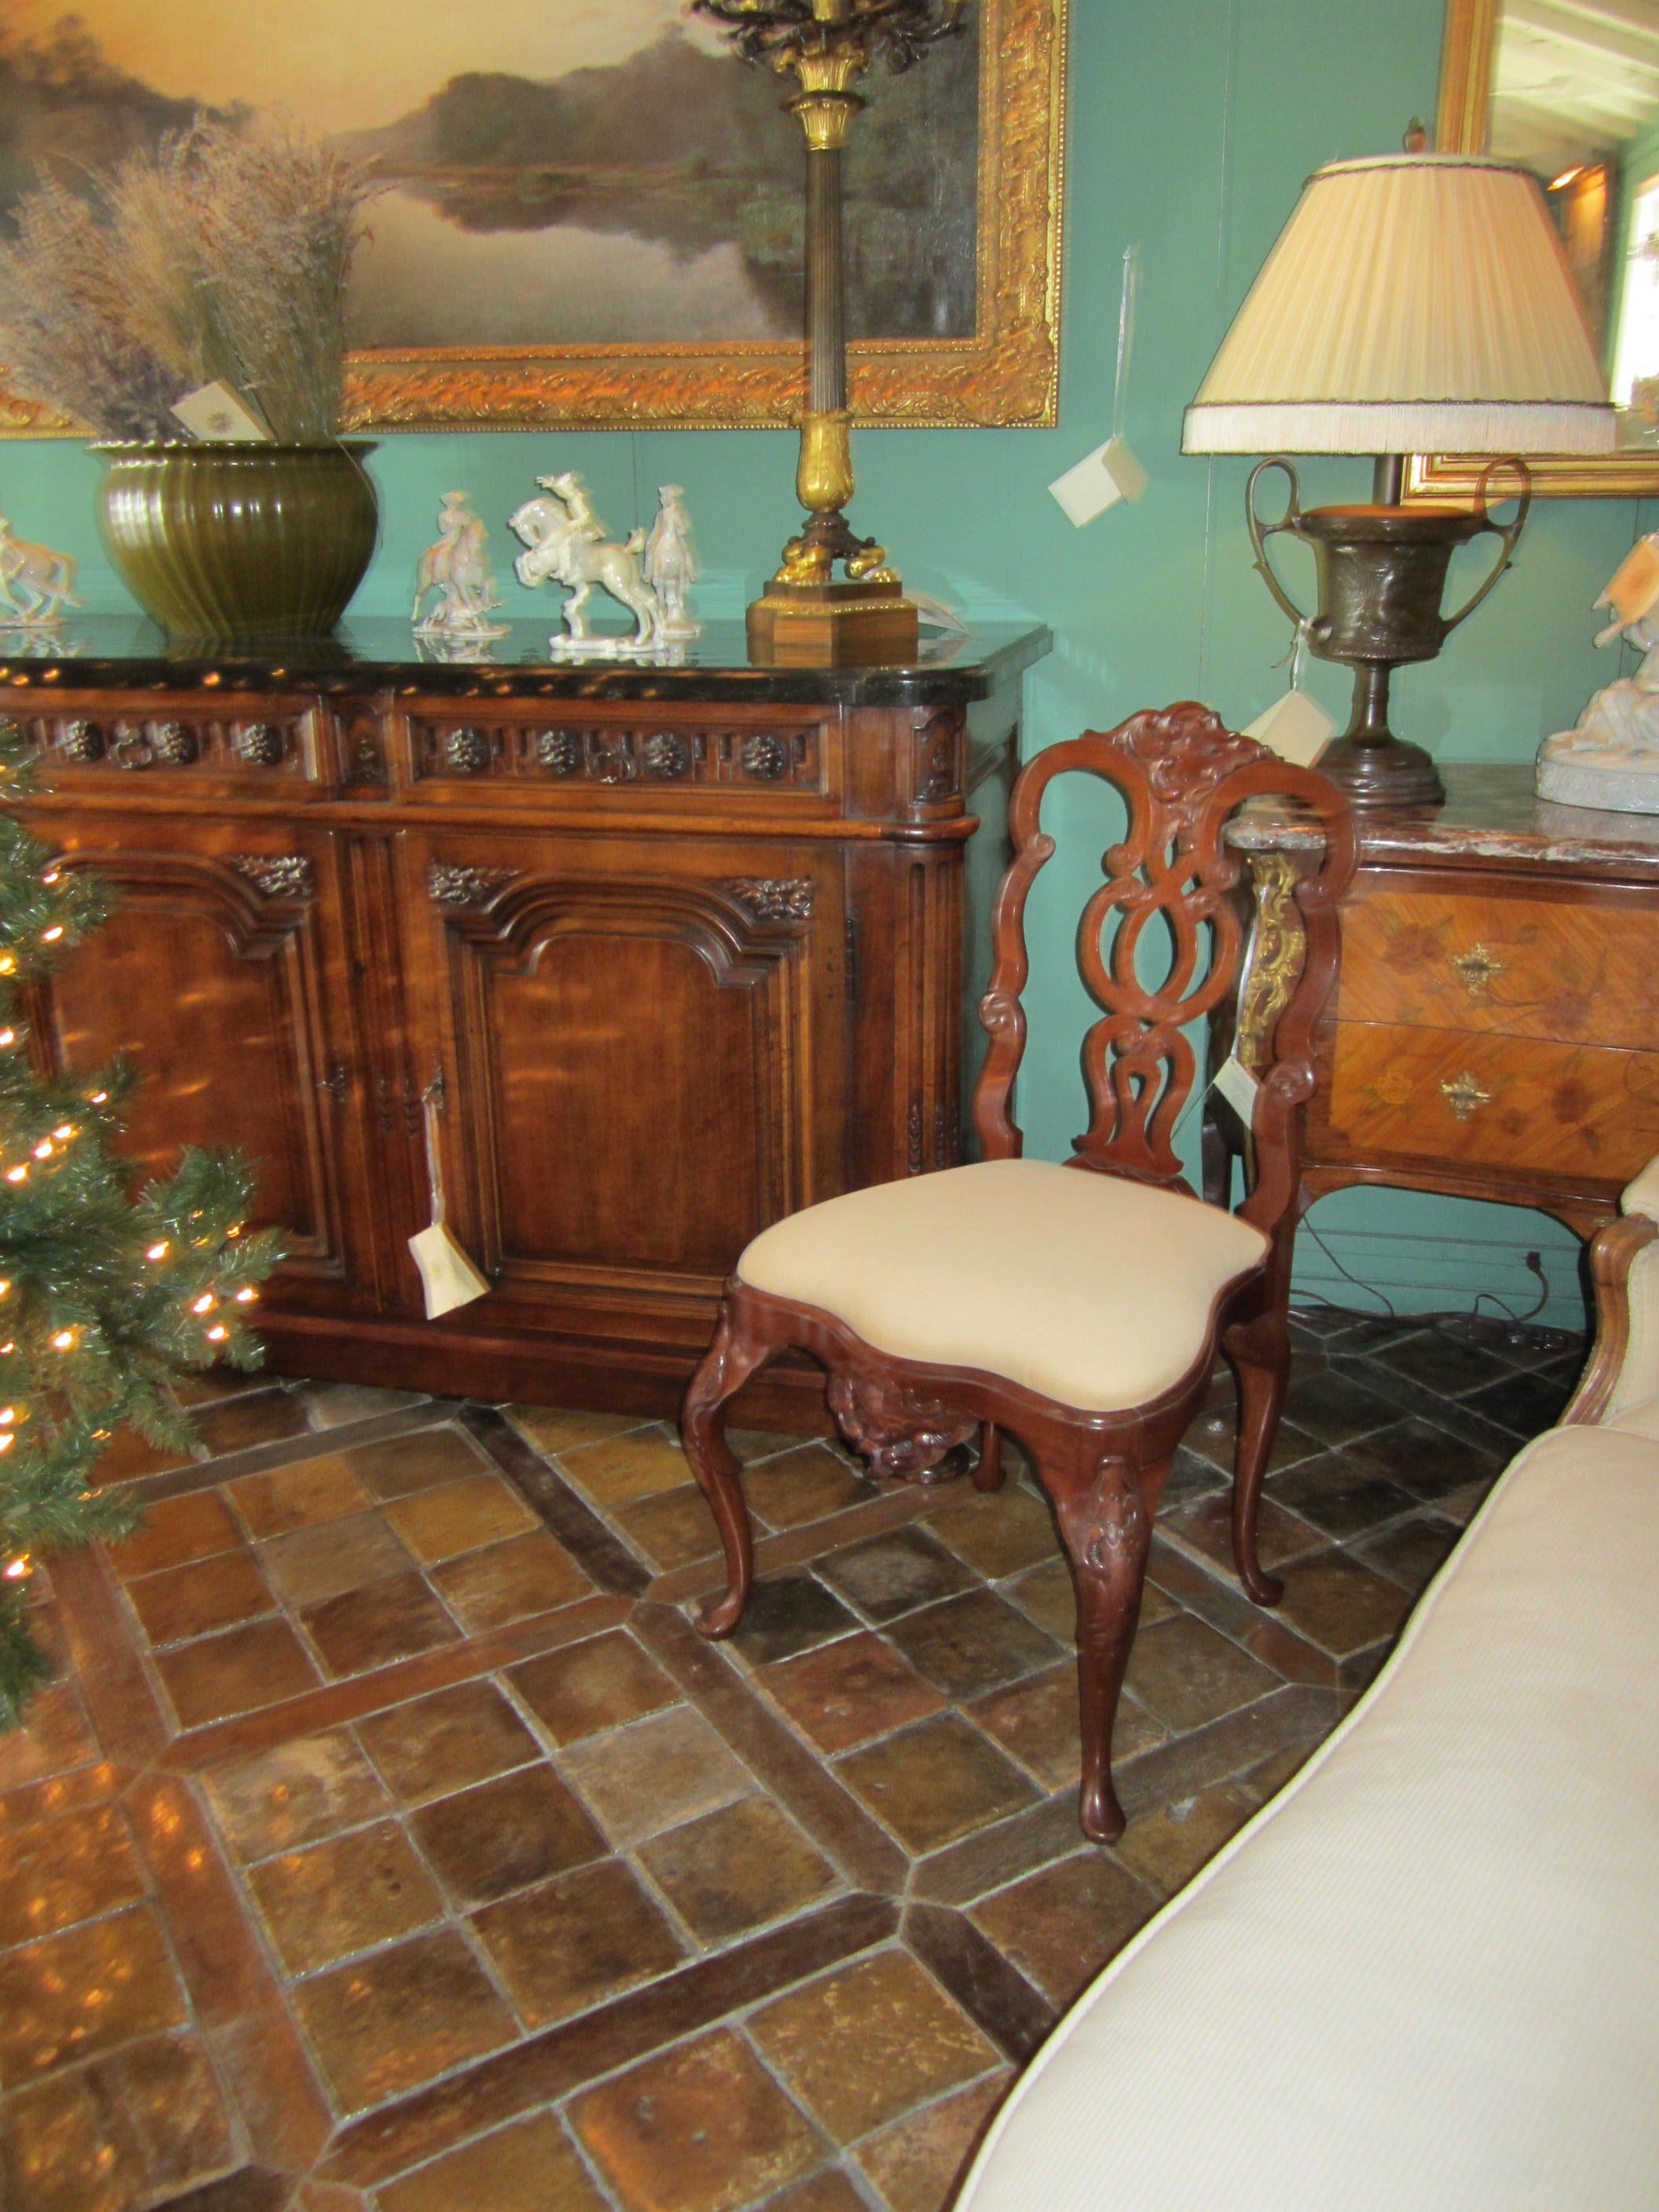 Importante paire de chaises de salle à manger haut de gamme en bois de Jacaranda de style Rococo portugais du XVIIIe siècle, avec de belles sculptures tout autour. Cet ensemble de sièges est tapissé d'un tissu crème clair. Chaque chaise est